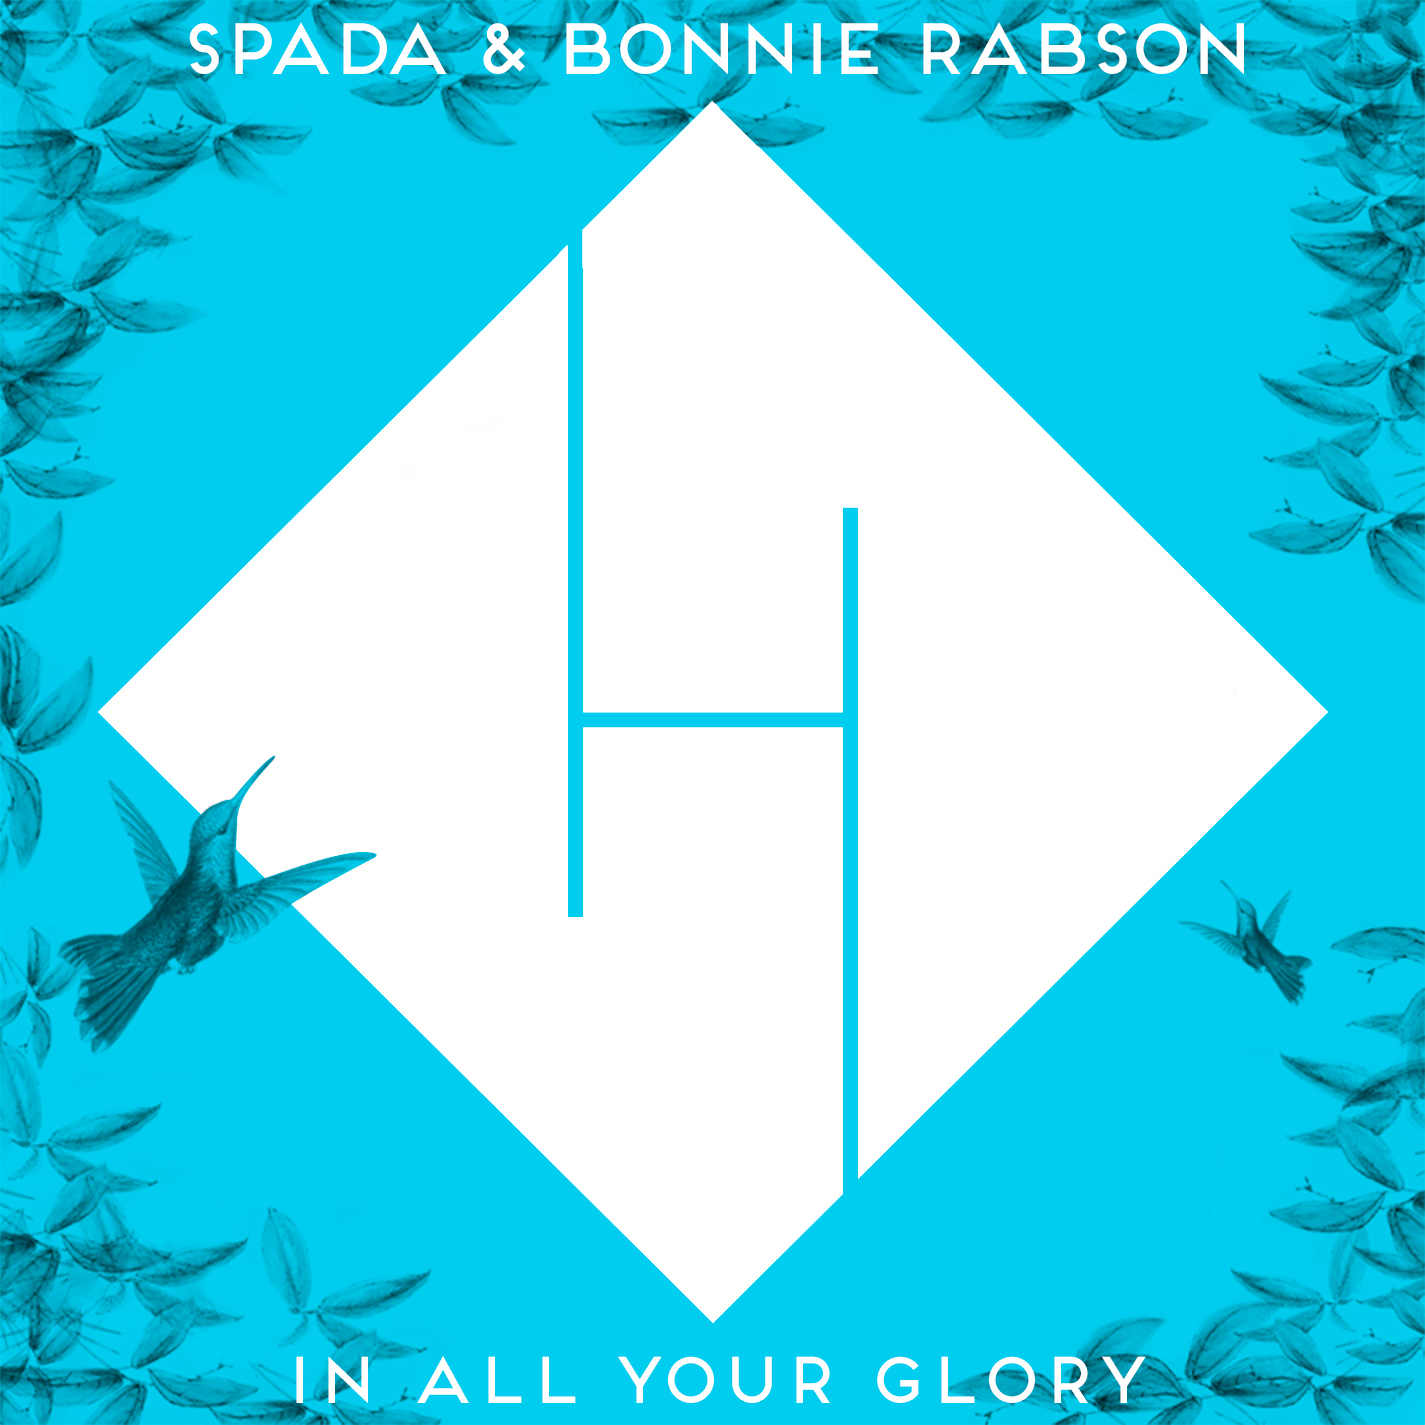 Tikiake In All Your Glory - Spada & Bonnie Rabson (Remix Boris Brejcha) PREVIEW